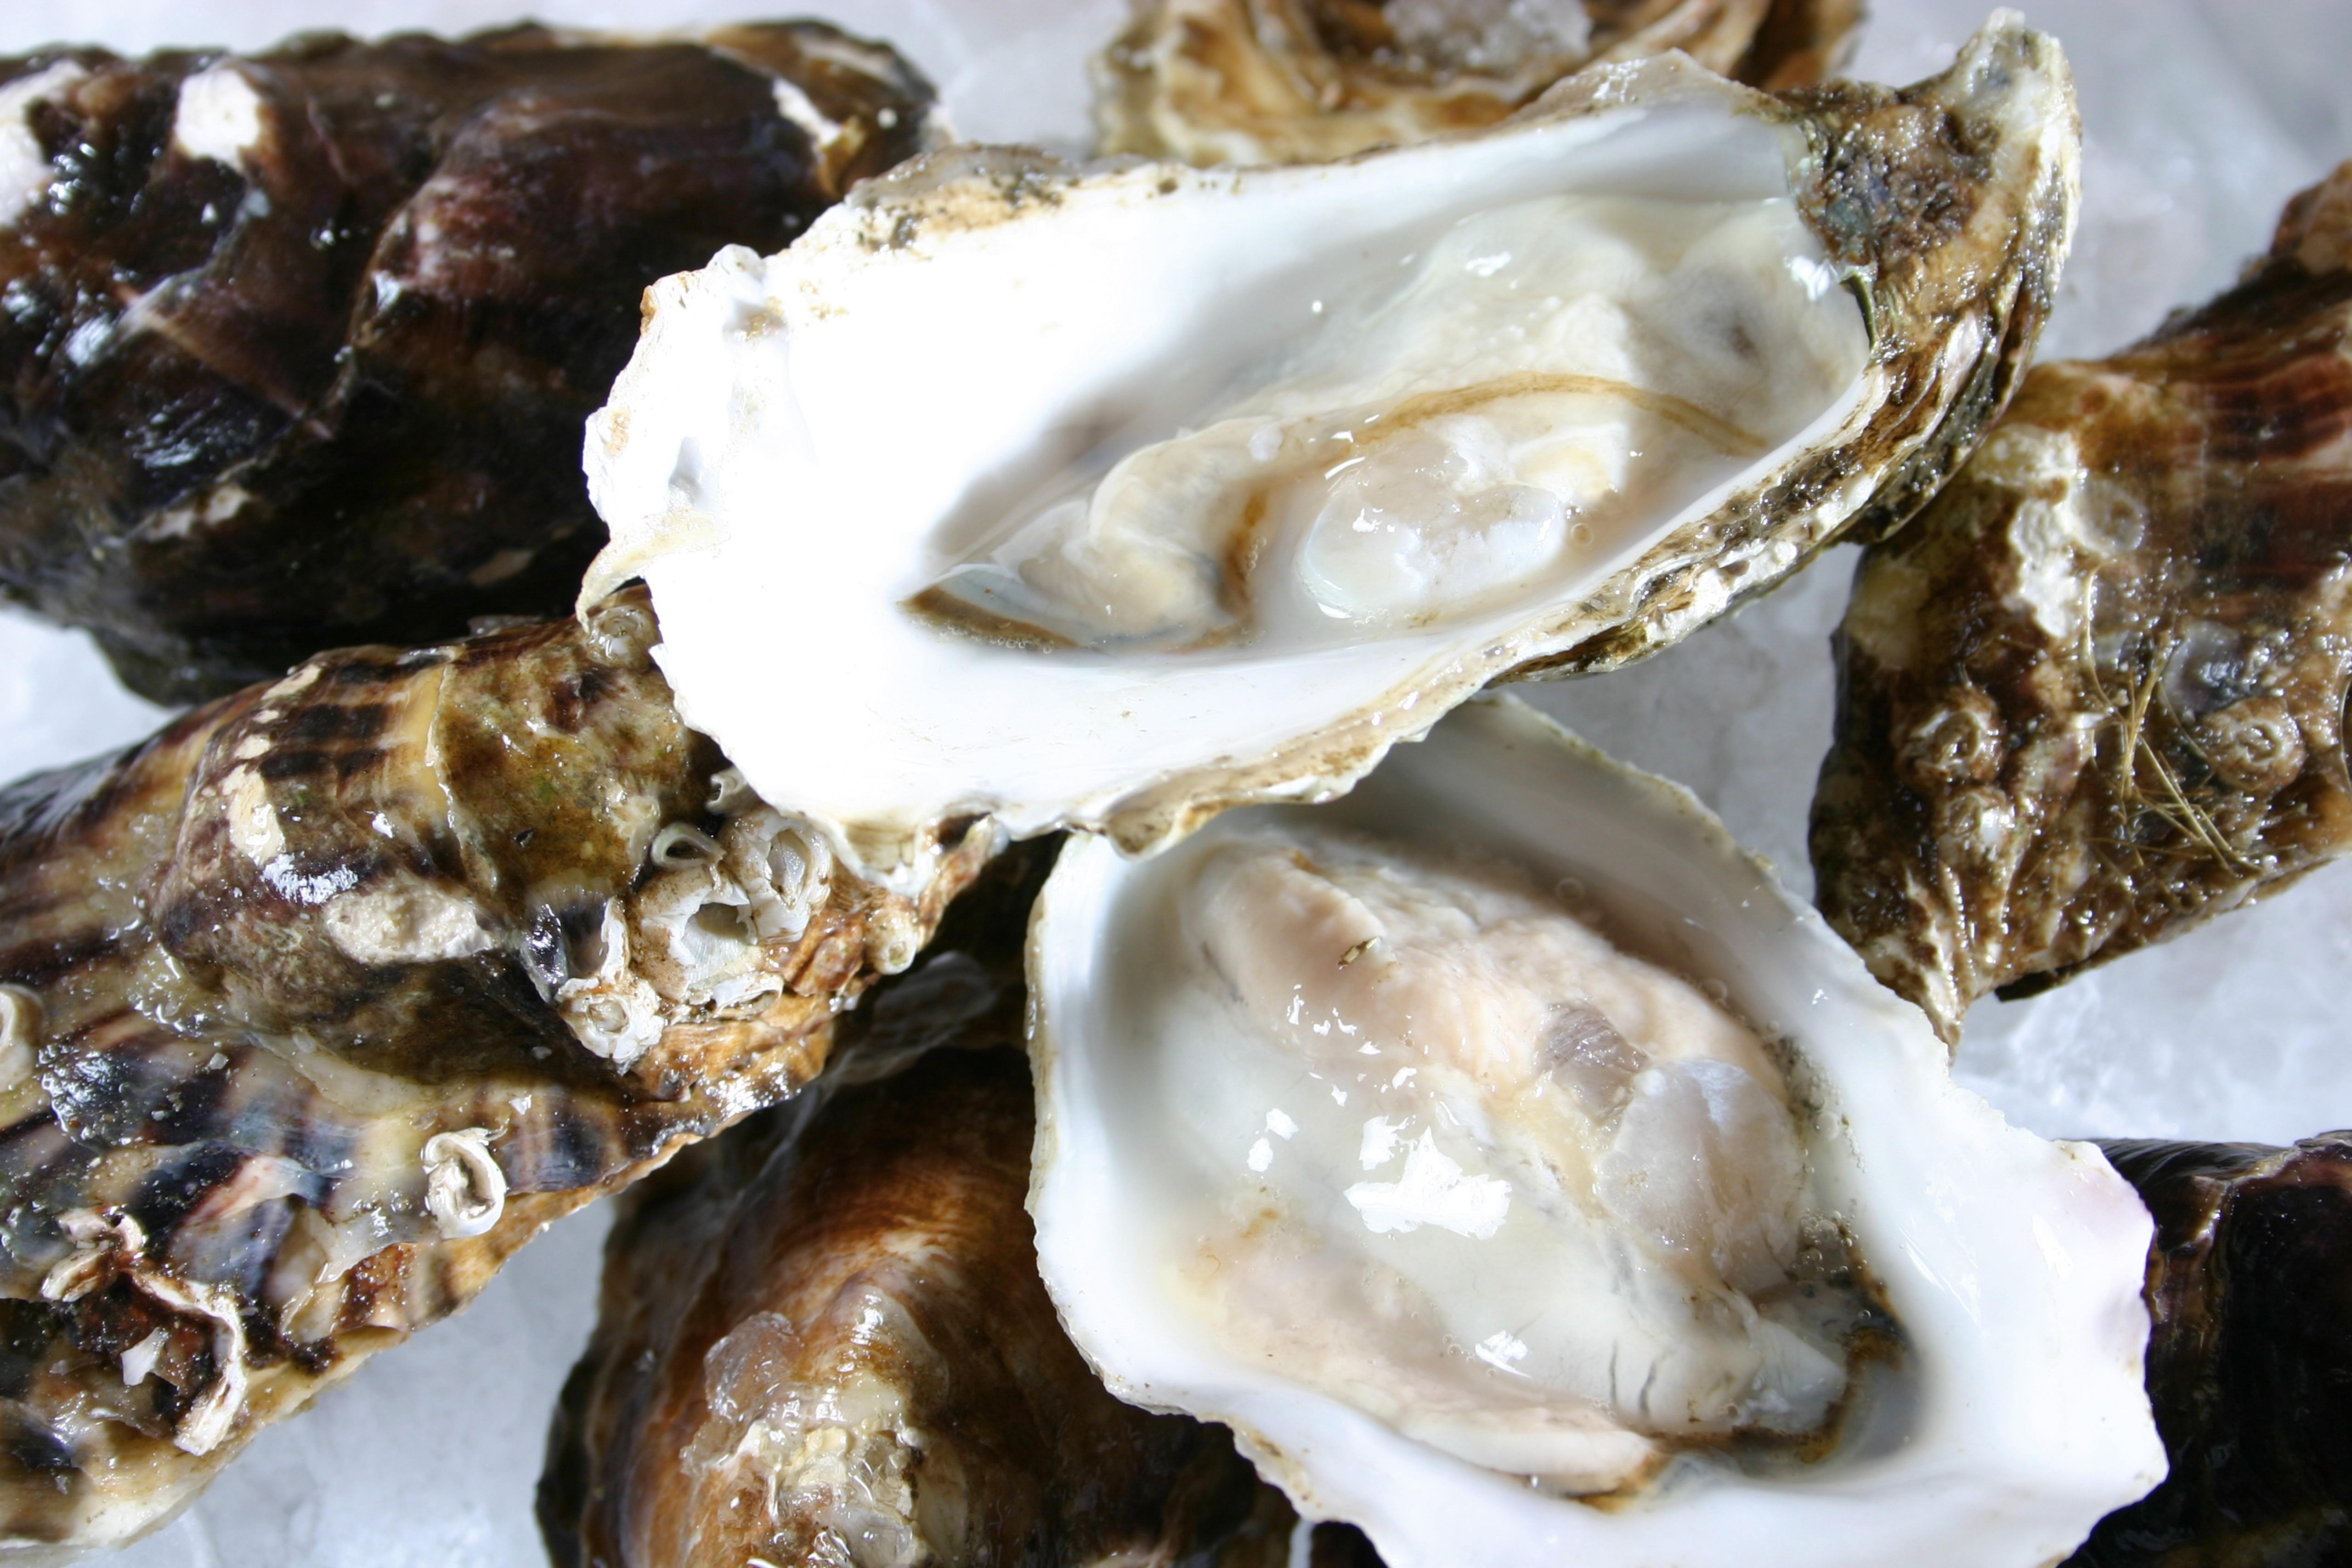 Comment ouvrir les huîtres facilement ? – L'Huîtrerie